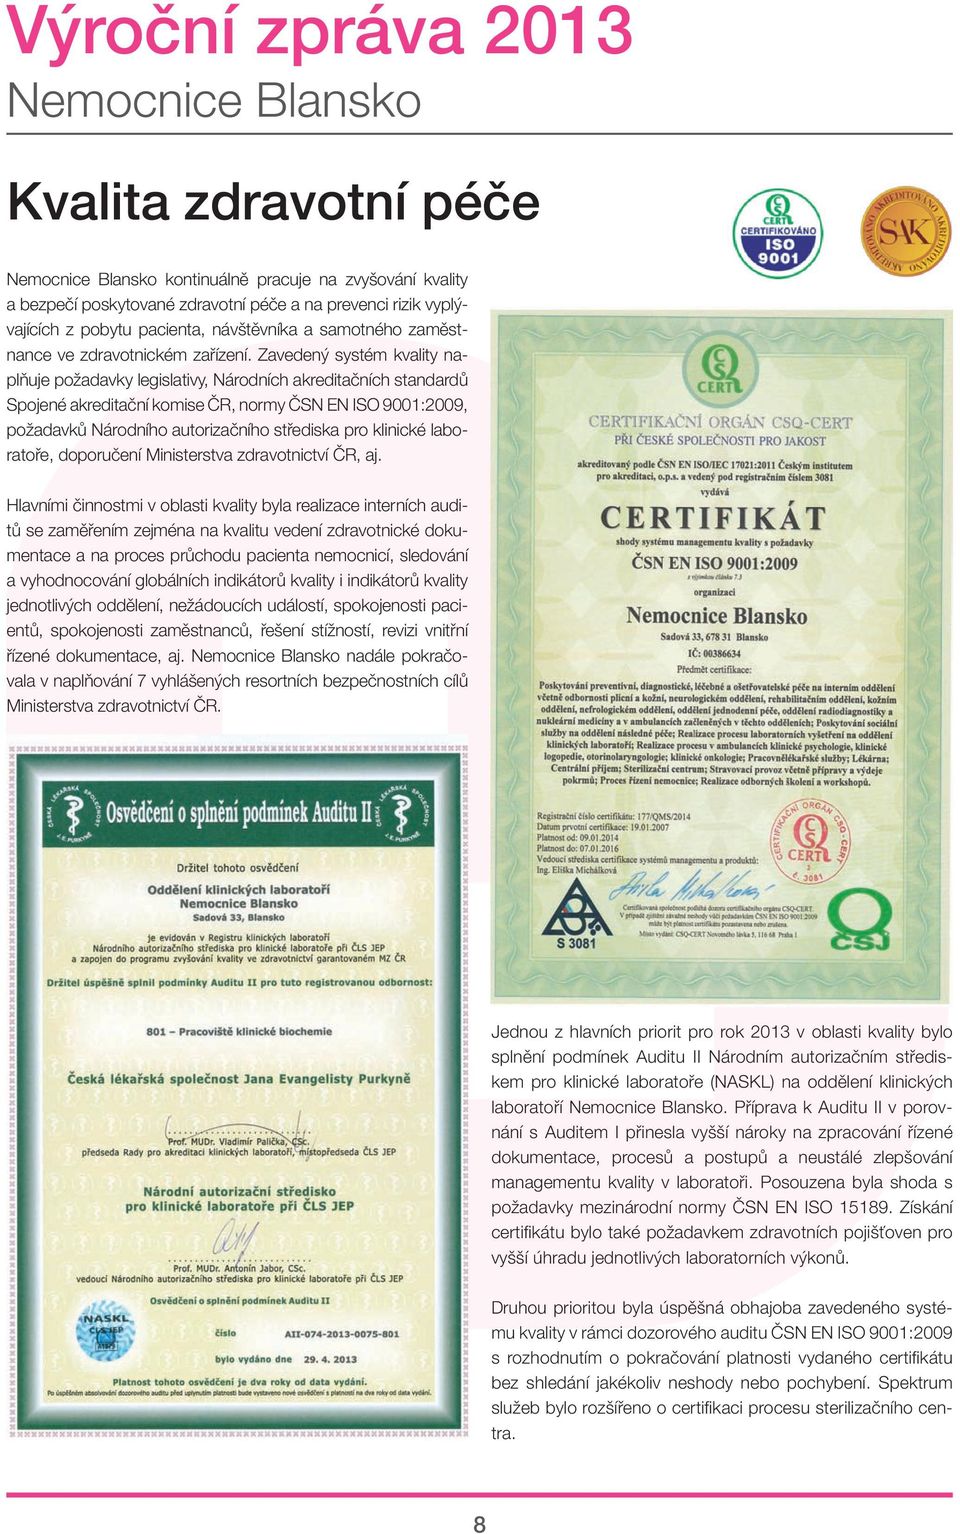 Zavedený systém kvality naplňuje požadavky legislativy, Národních akreditačních standardů Spojené akreditační komise ČR, normy ČSN EN ISO 9001:2009, požadavků Národního autorizačního střediska pro